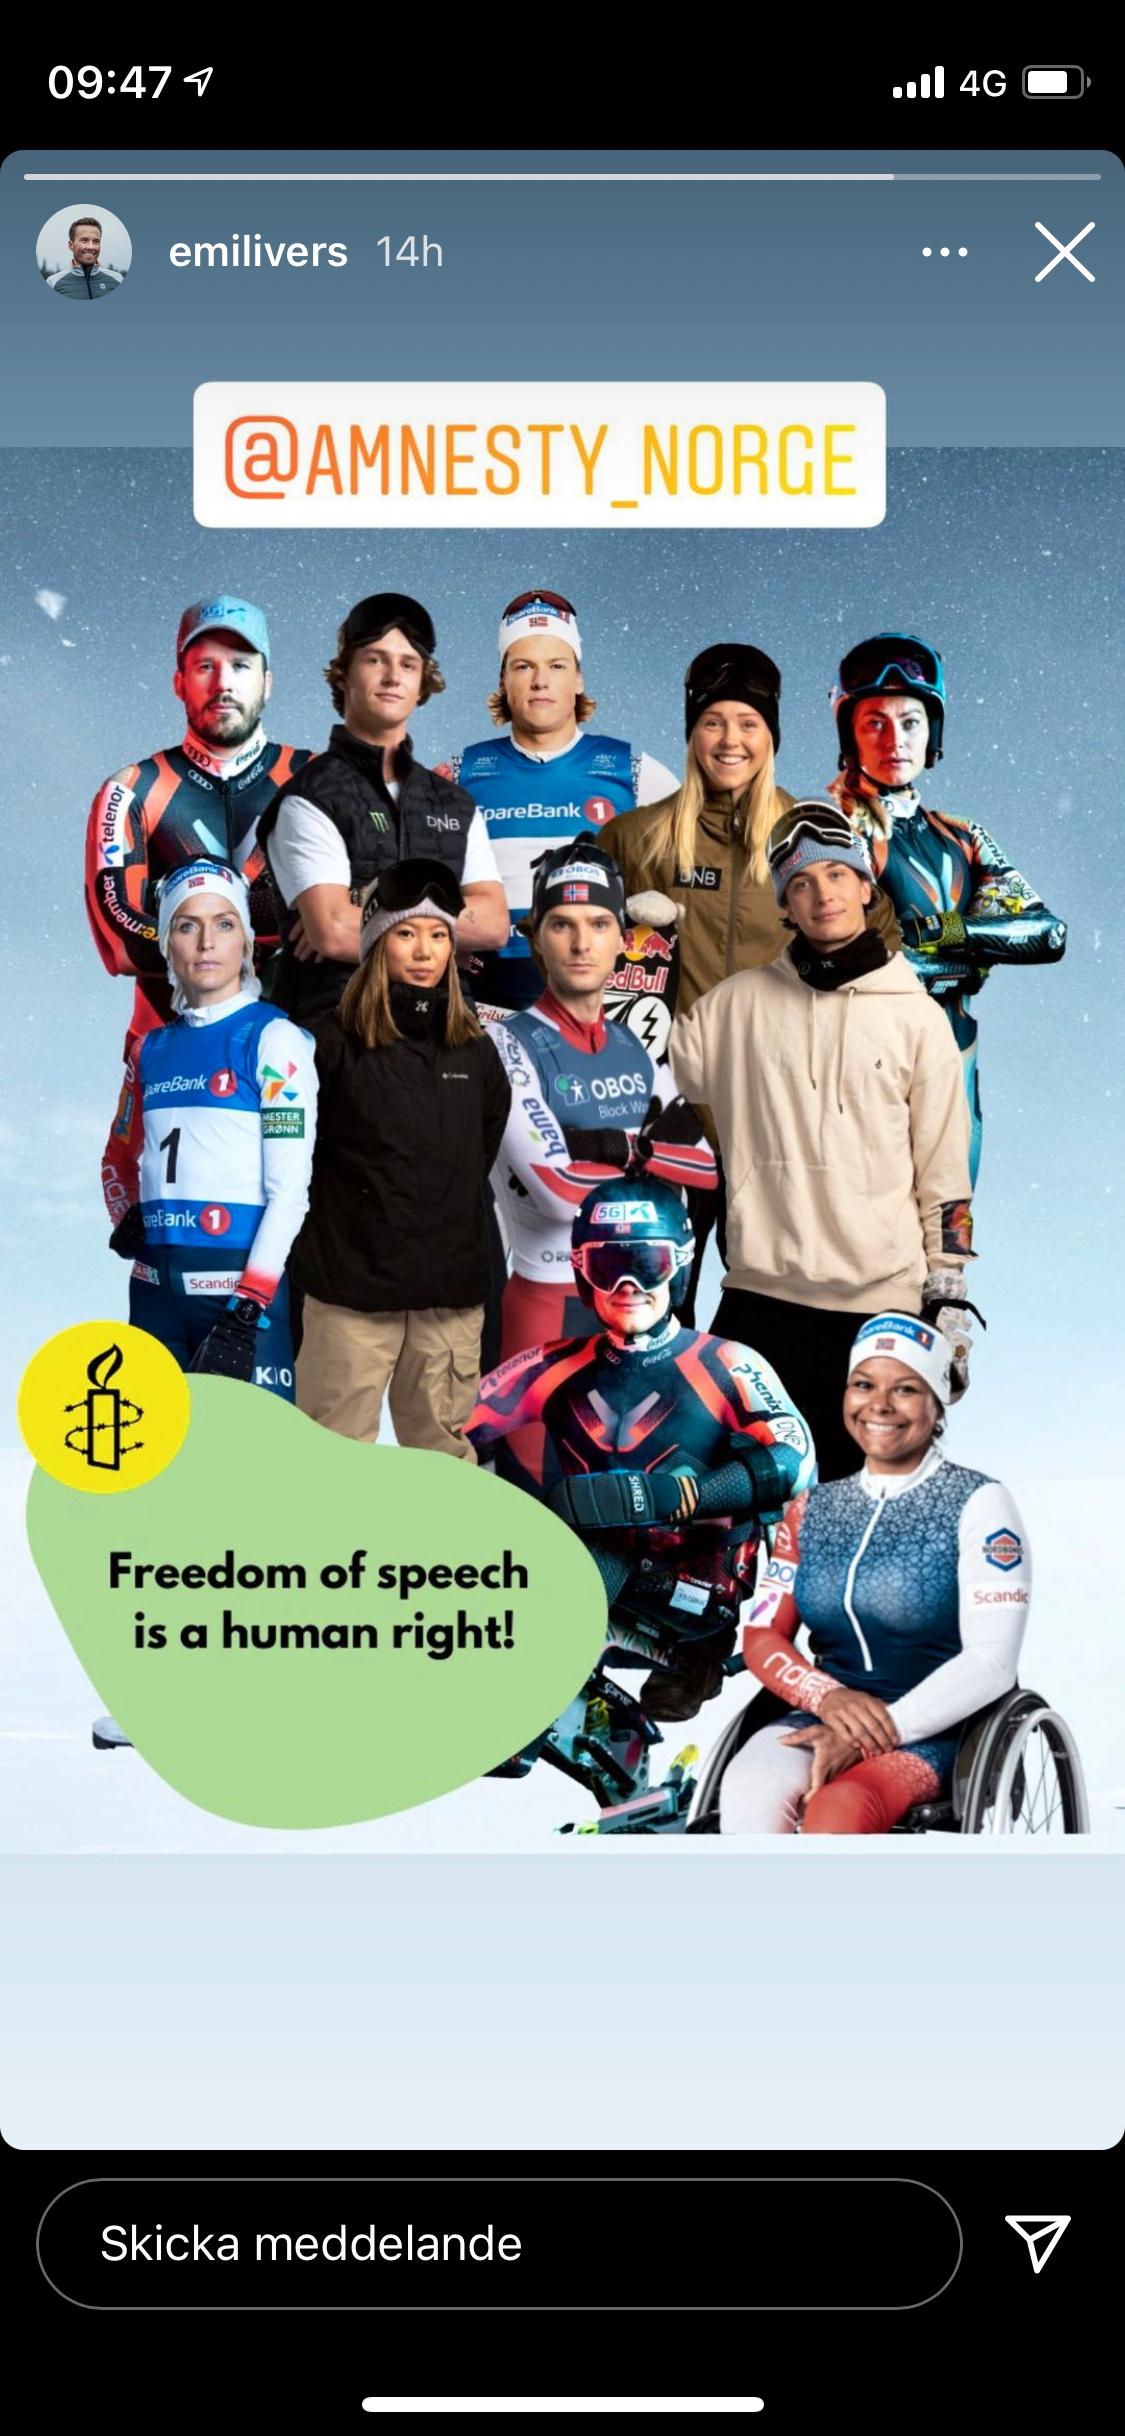 Johannes Hösflot Kläbo och Therese Johaug i kampanjen med Amnesty Norge. Här delat av skidåkaren Emil Iversen på hans sociala medier.